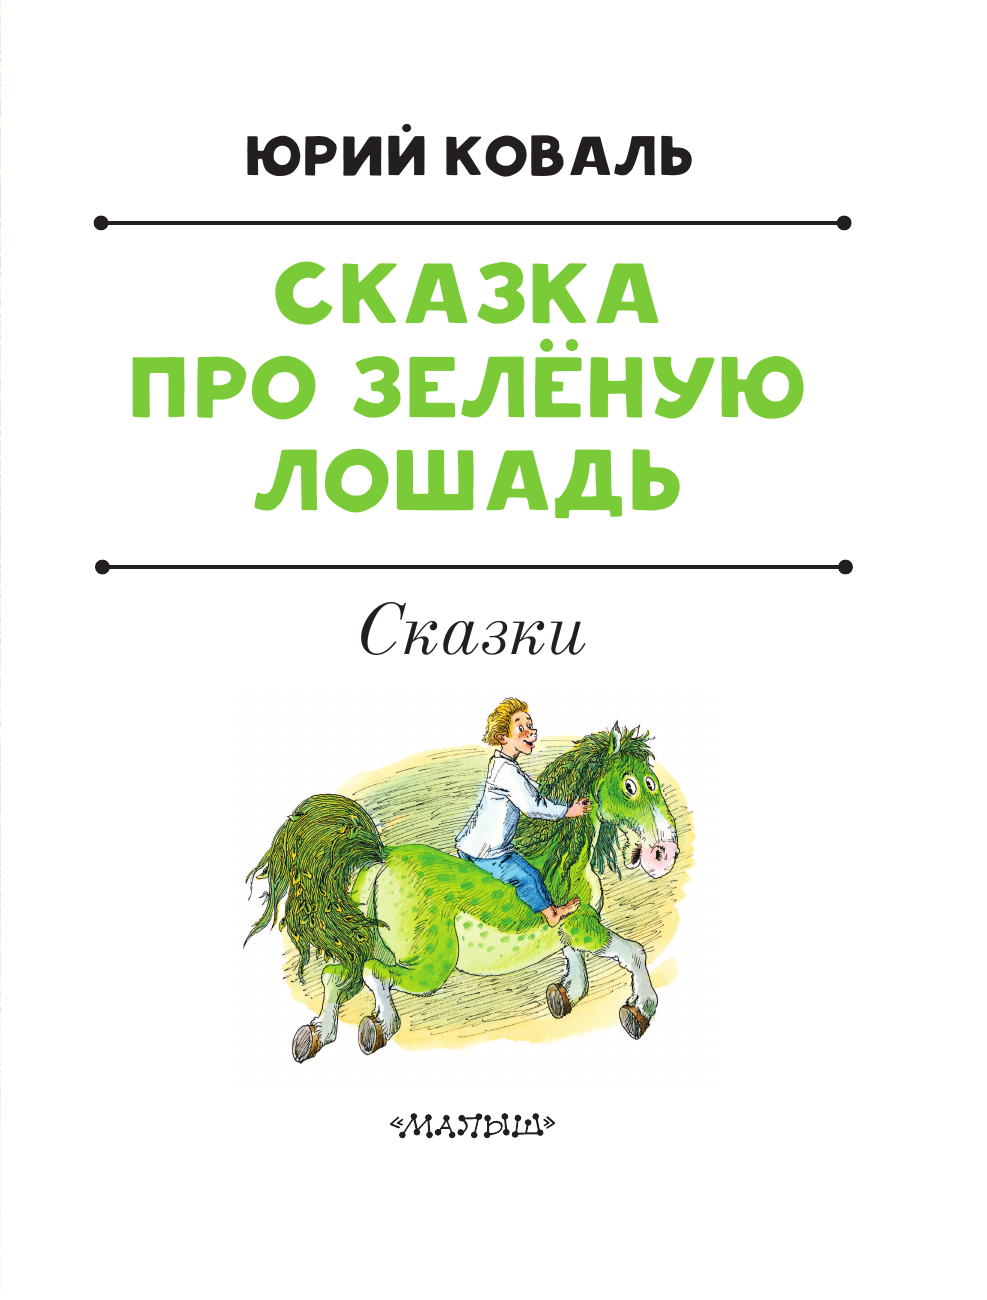 Коваль Юрий Иосифович Сказка про Зелёную Лошадь - страница 3